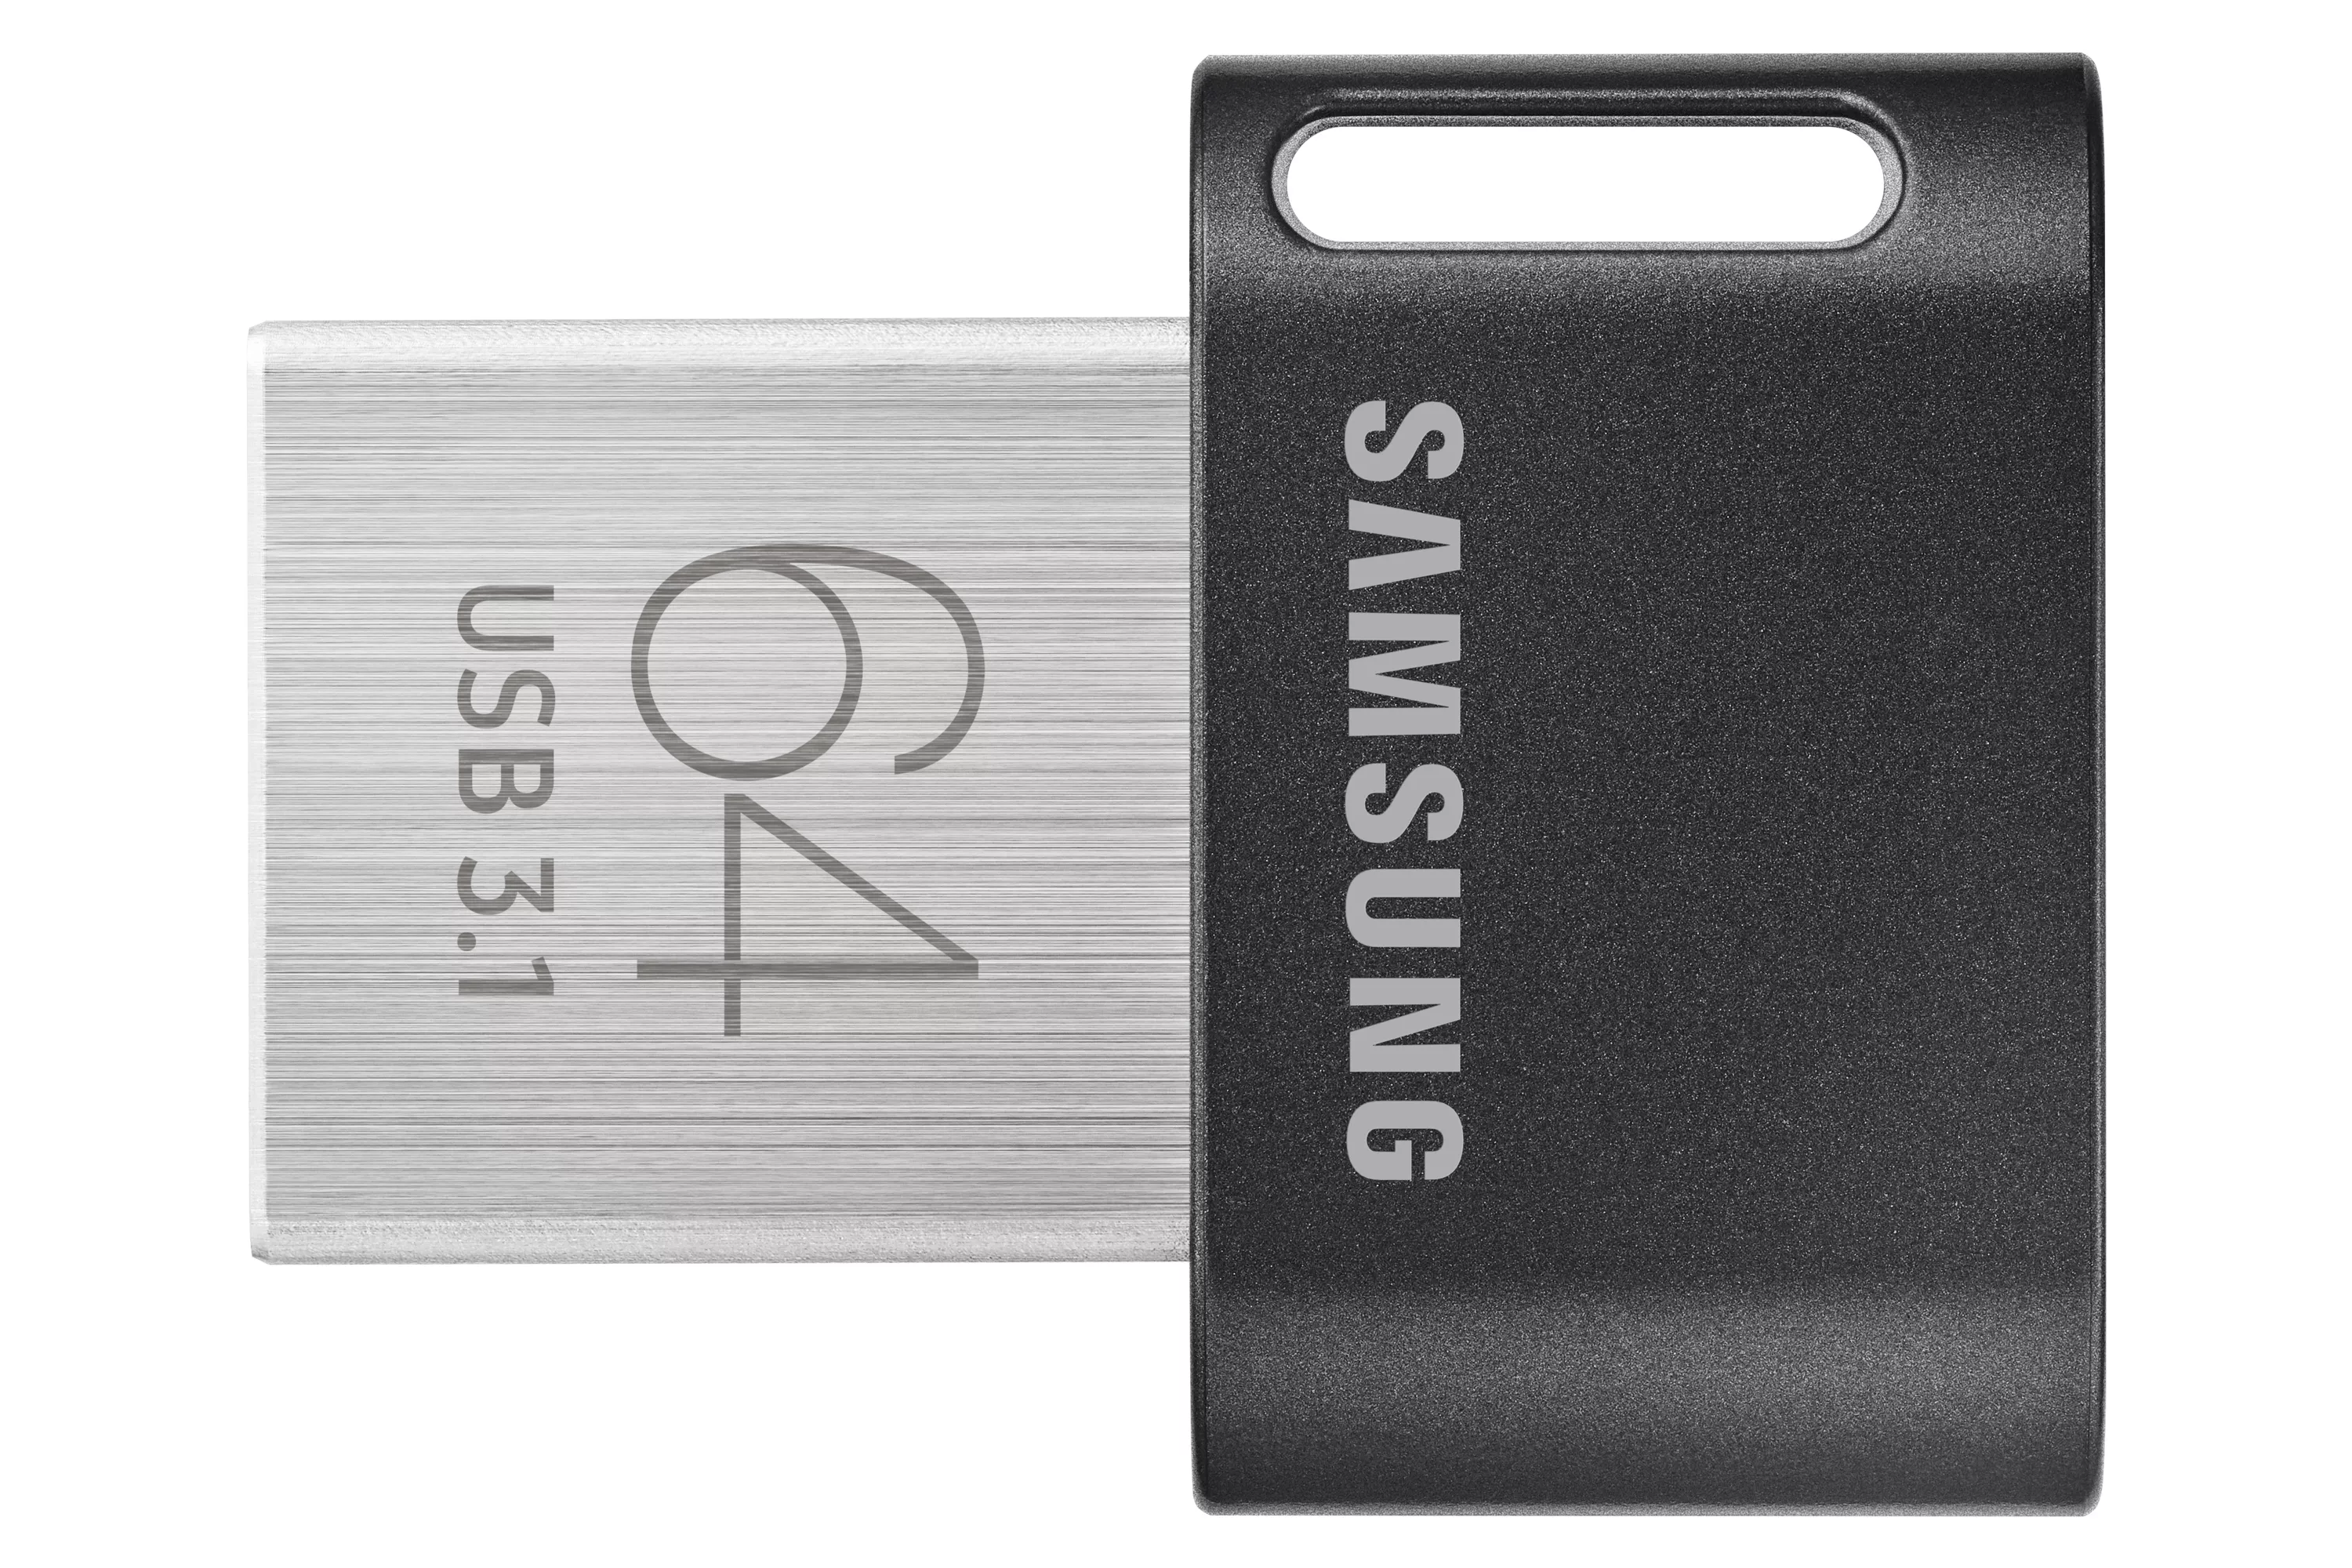 Achat SAMSUNG FIT PLUS 64Go USB 3.1 au meilleur prix